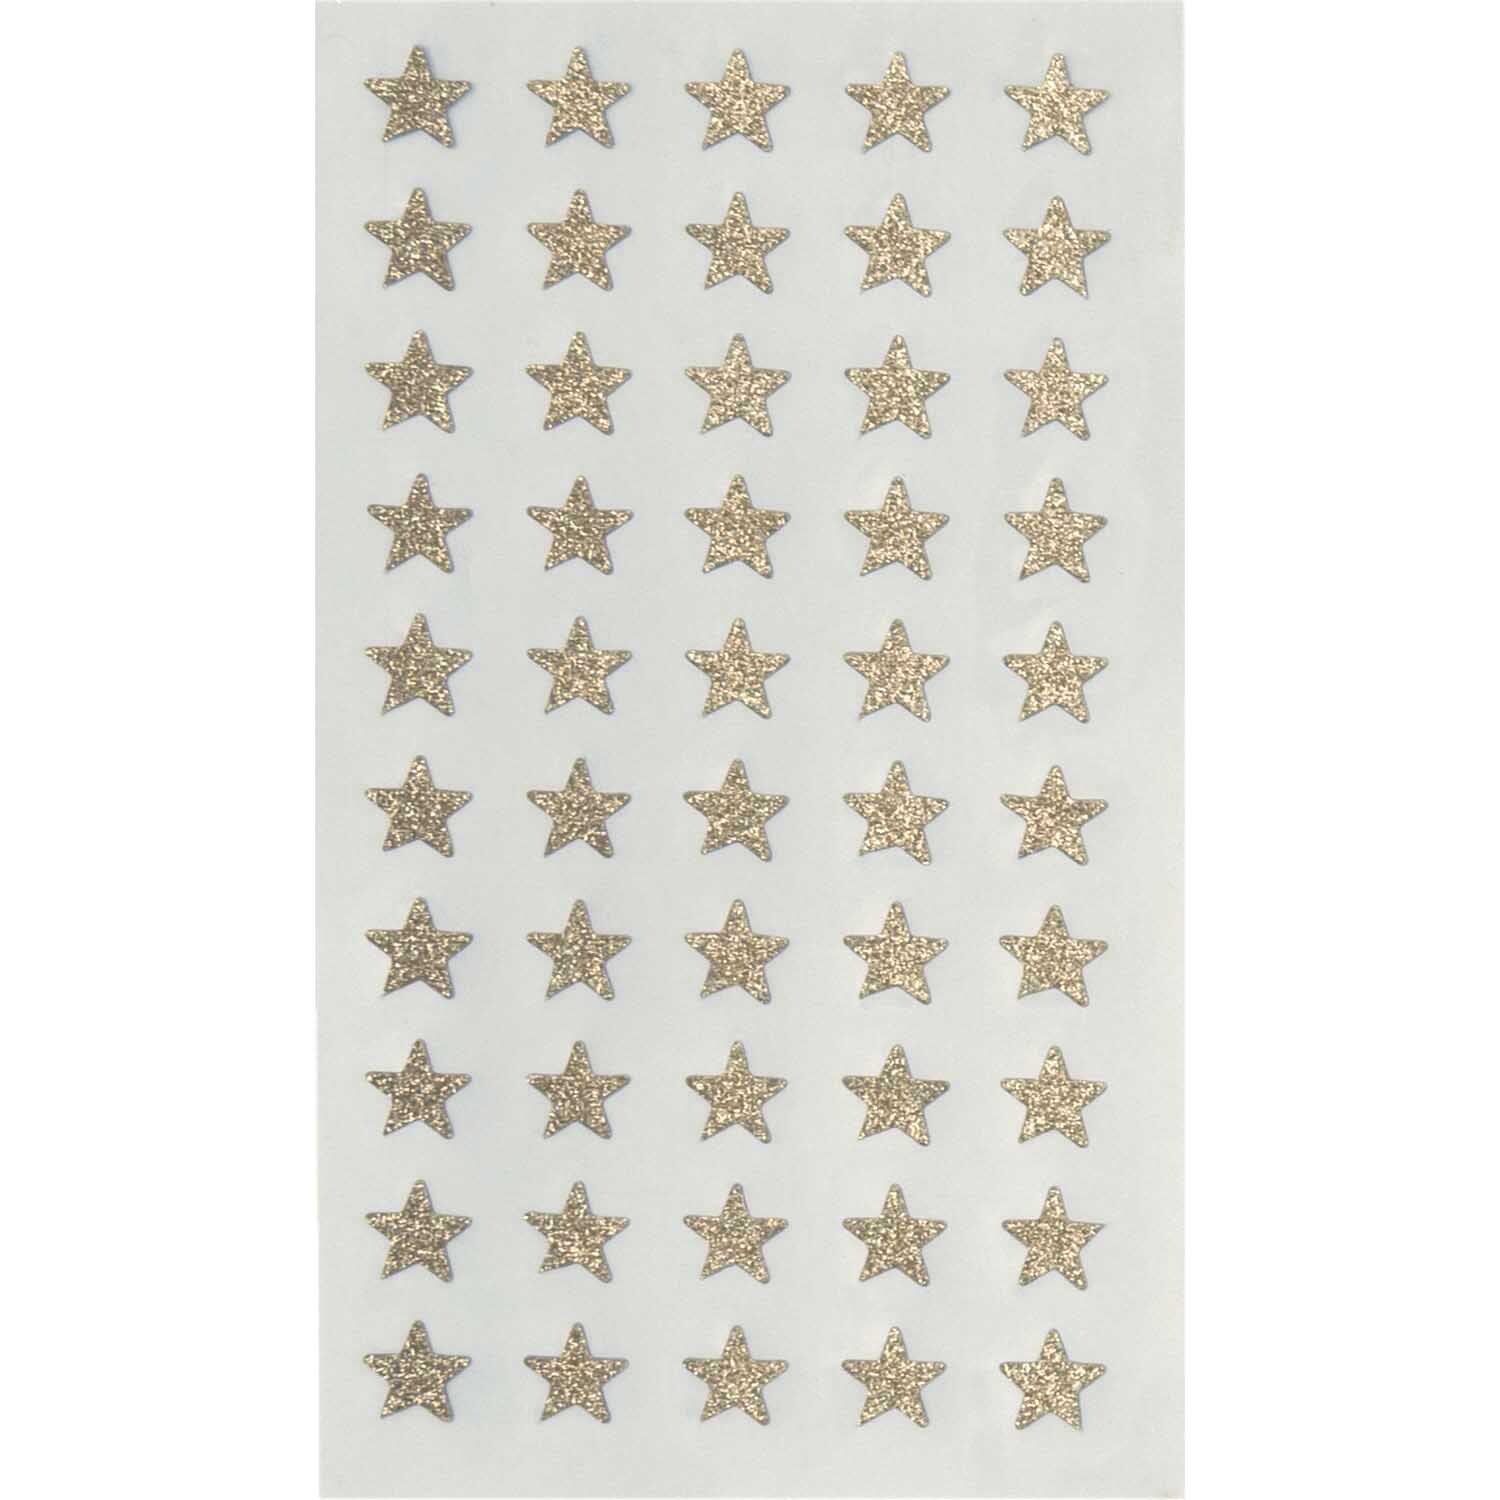 Paper Poetry Sticker Sterne Glitter gold 4 Blatt